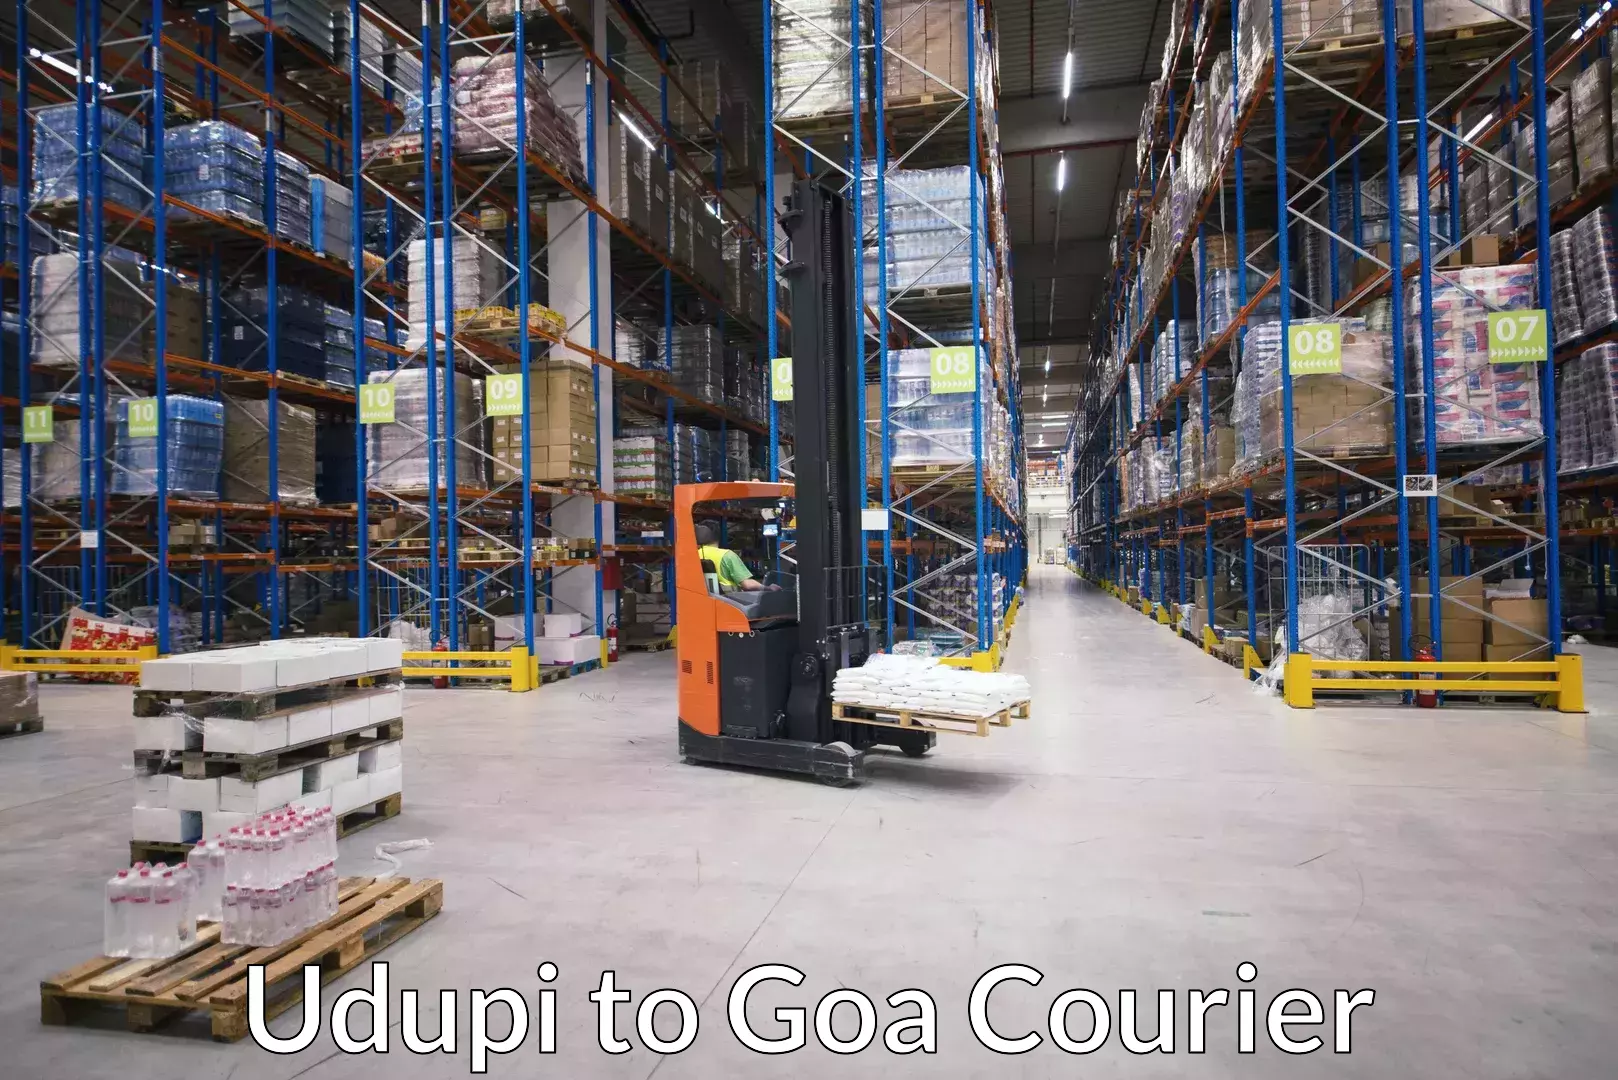 Luggage shipping specialists Udupi to Goa